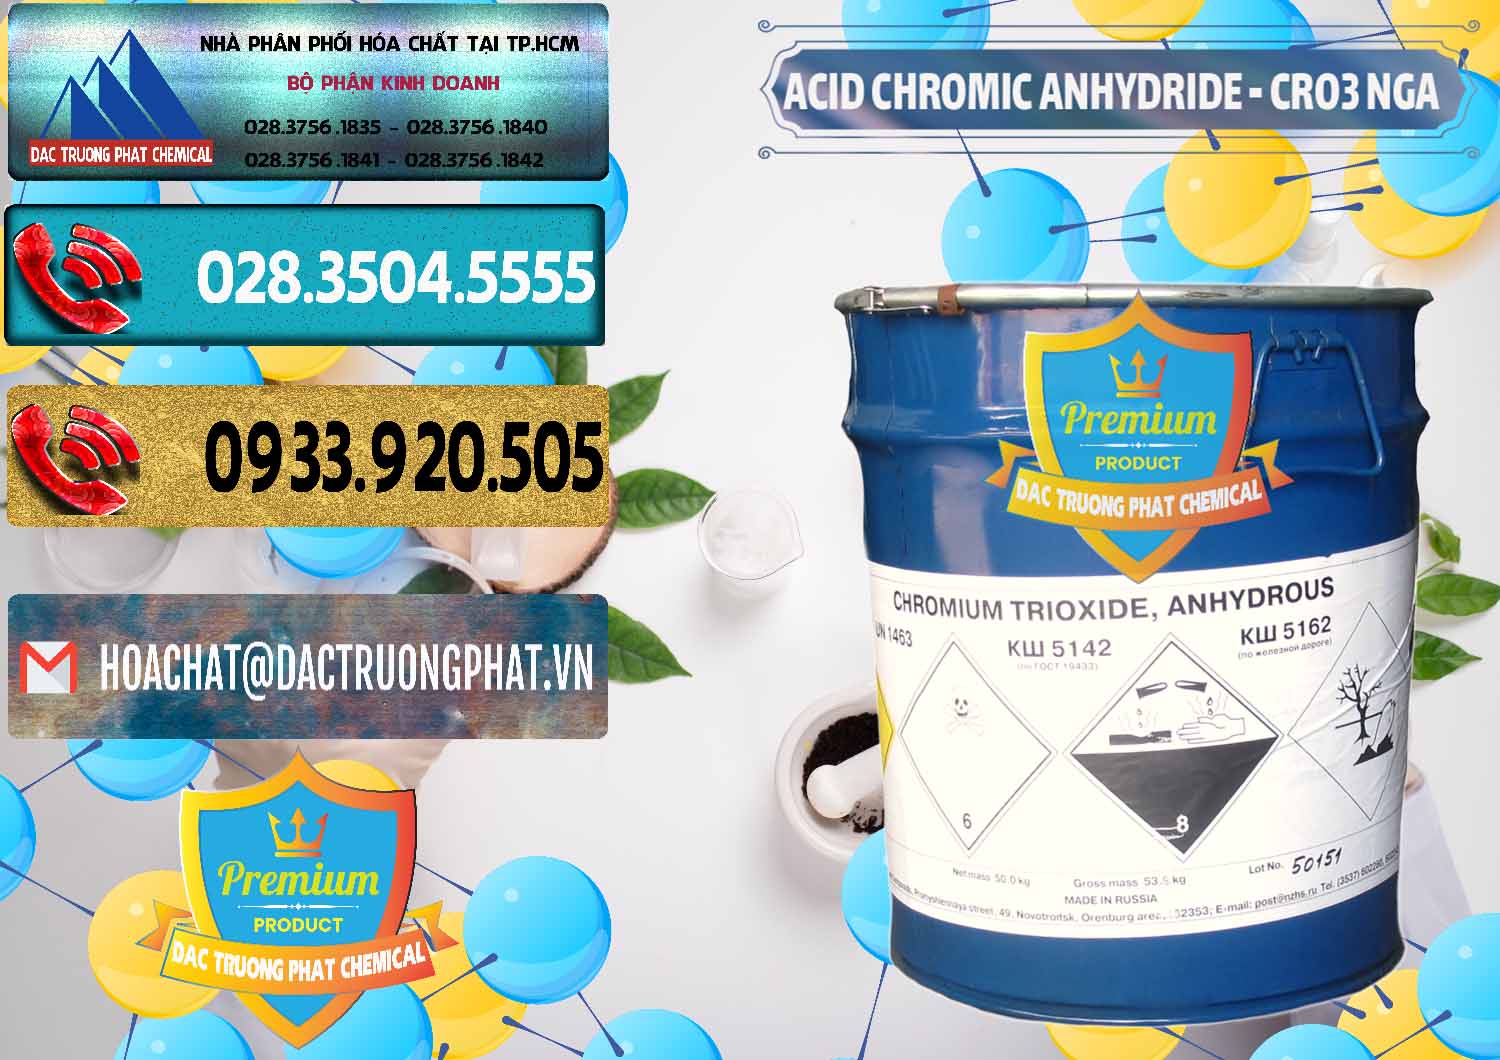 Bán _ cung ứng Acid Chromic Anhydride - Cromic CRO3 Nga Russia - 0006 - Nơi phân phối & cung cấp hóa chất tại TP.HCM - hoachatdetnhuom.com